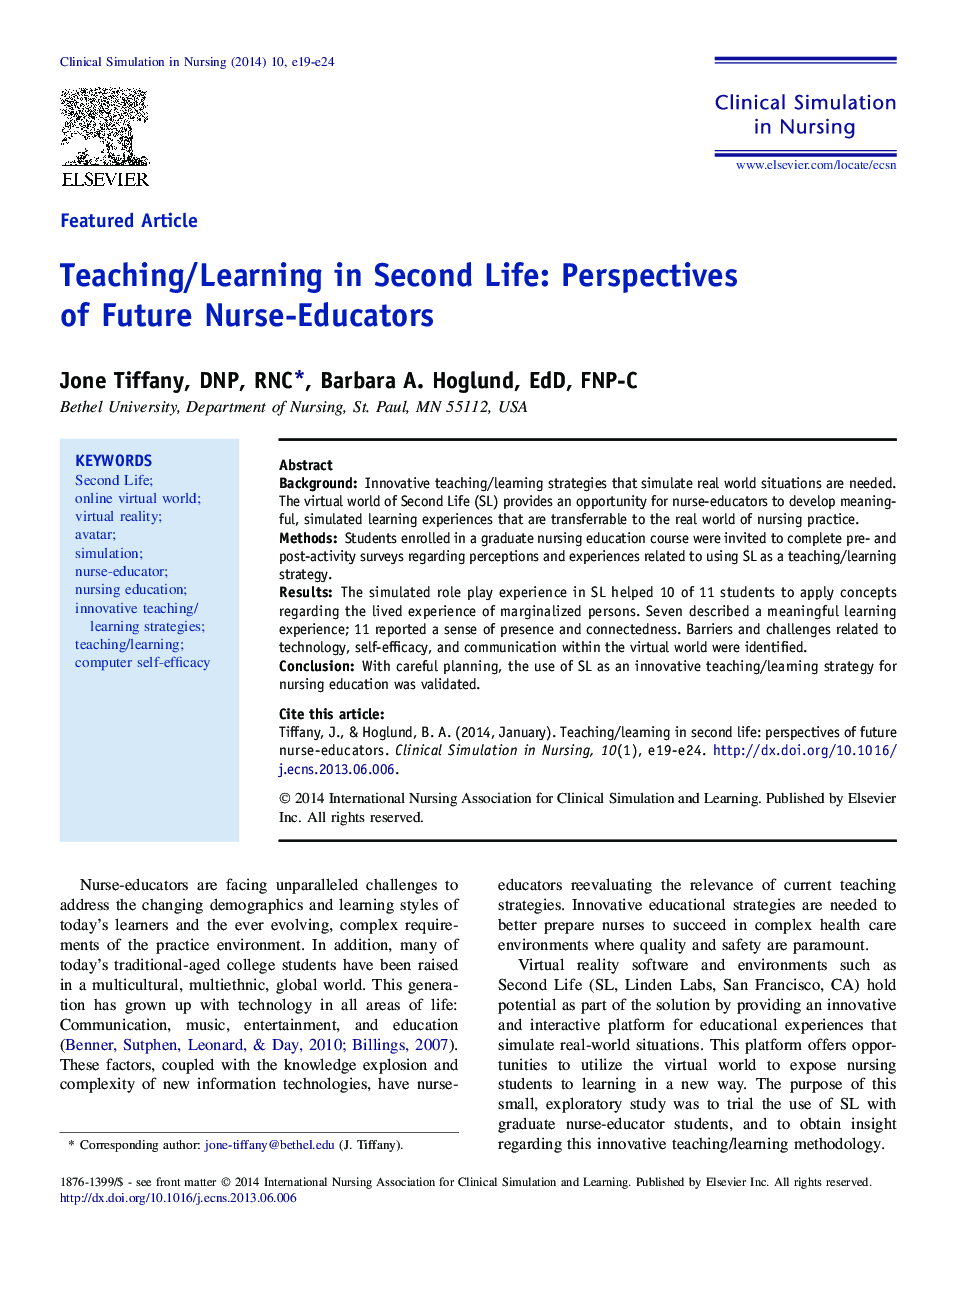 آموزش و یادگیری در زندگی دوم: چشم انداز پرستار آینده معلمان 